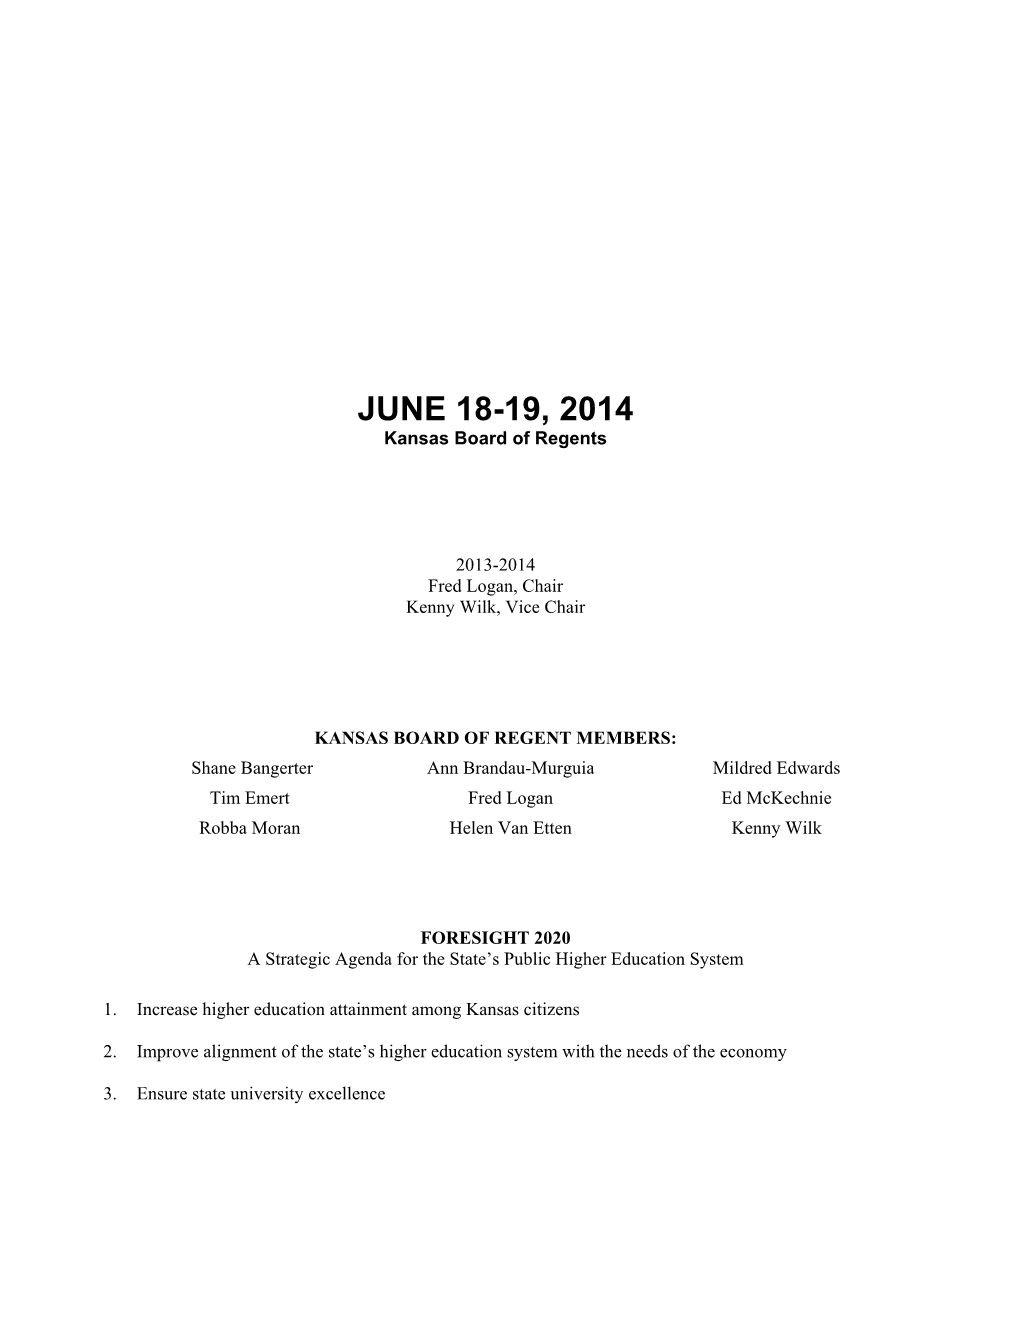 JUNE 18-19, 2014 Kansas Board of Regents